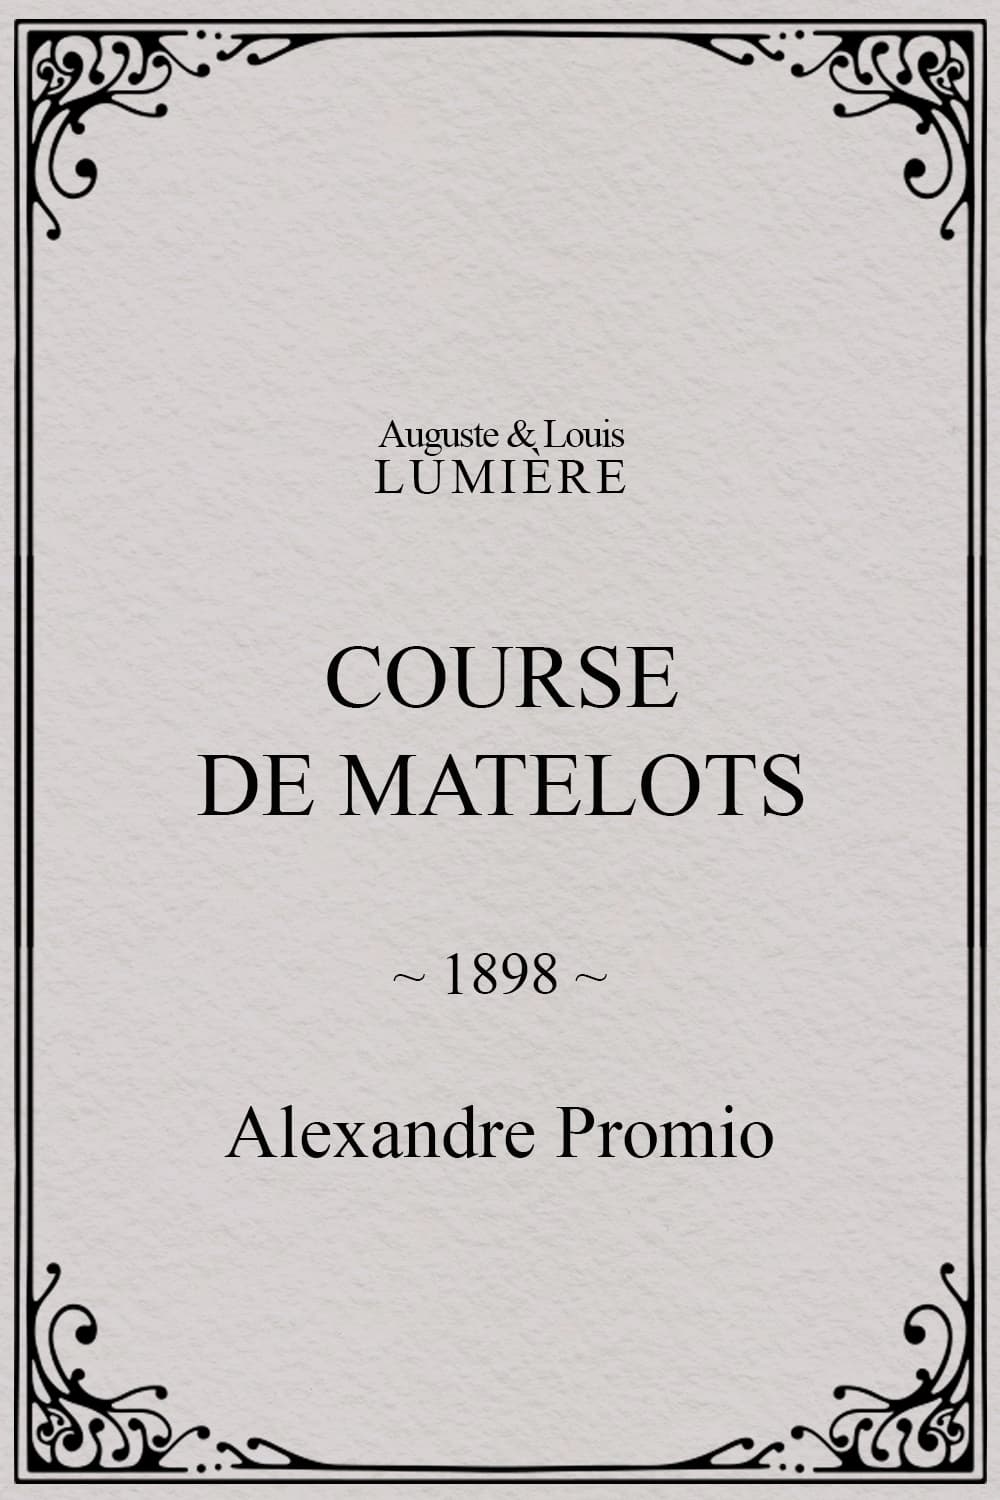 Course de matelots (1898)